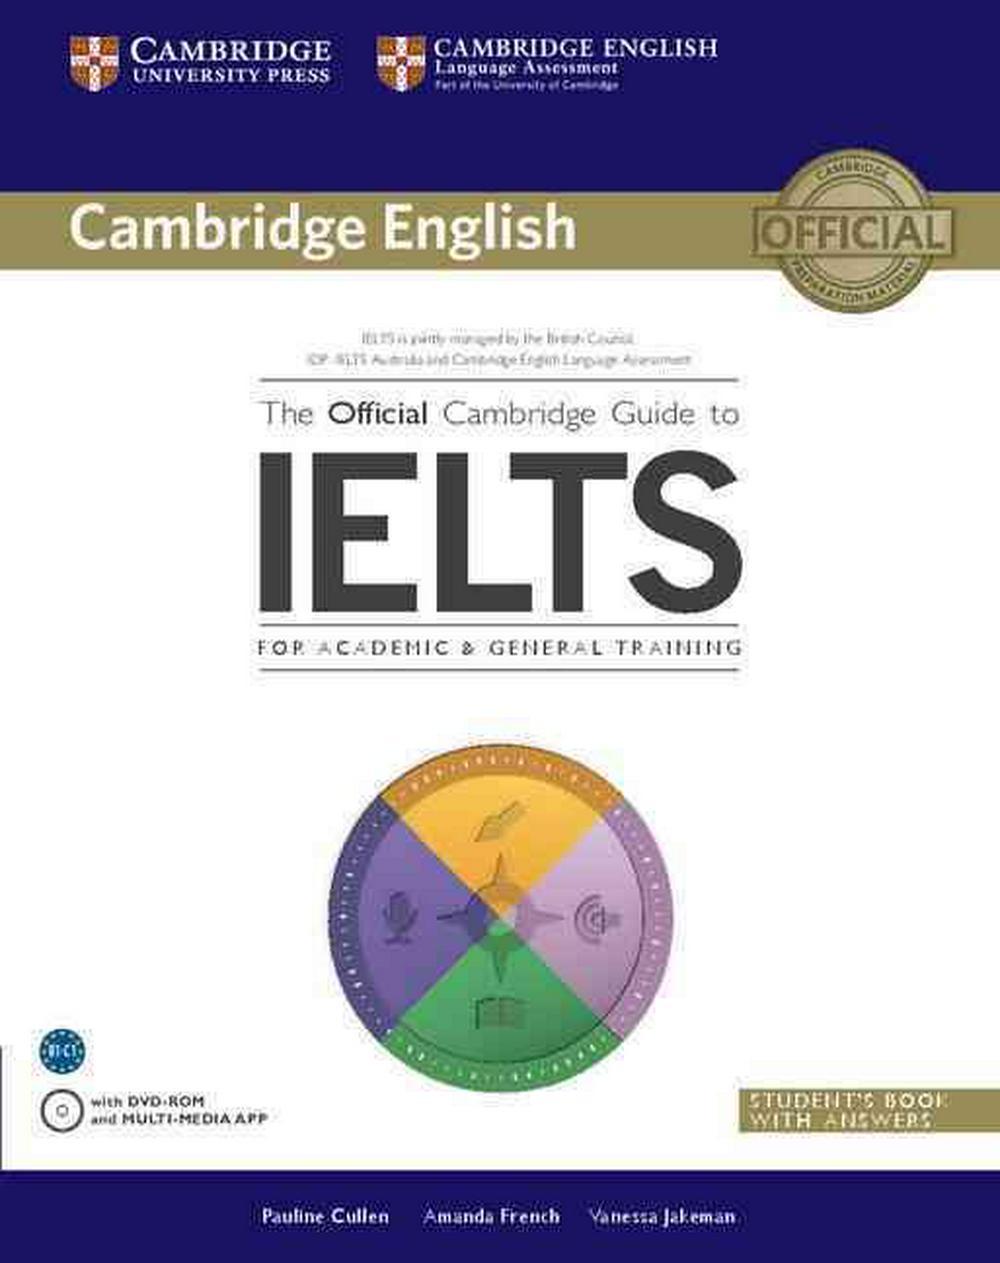 หนังสือ OFFICIAL CAMBRIDGE GUIDE TO IELTS:SB+ANS & DVD-ROM by DK TODAY